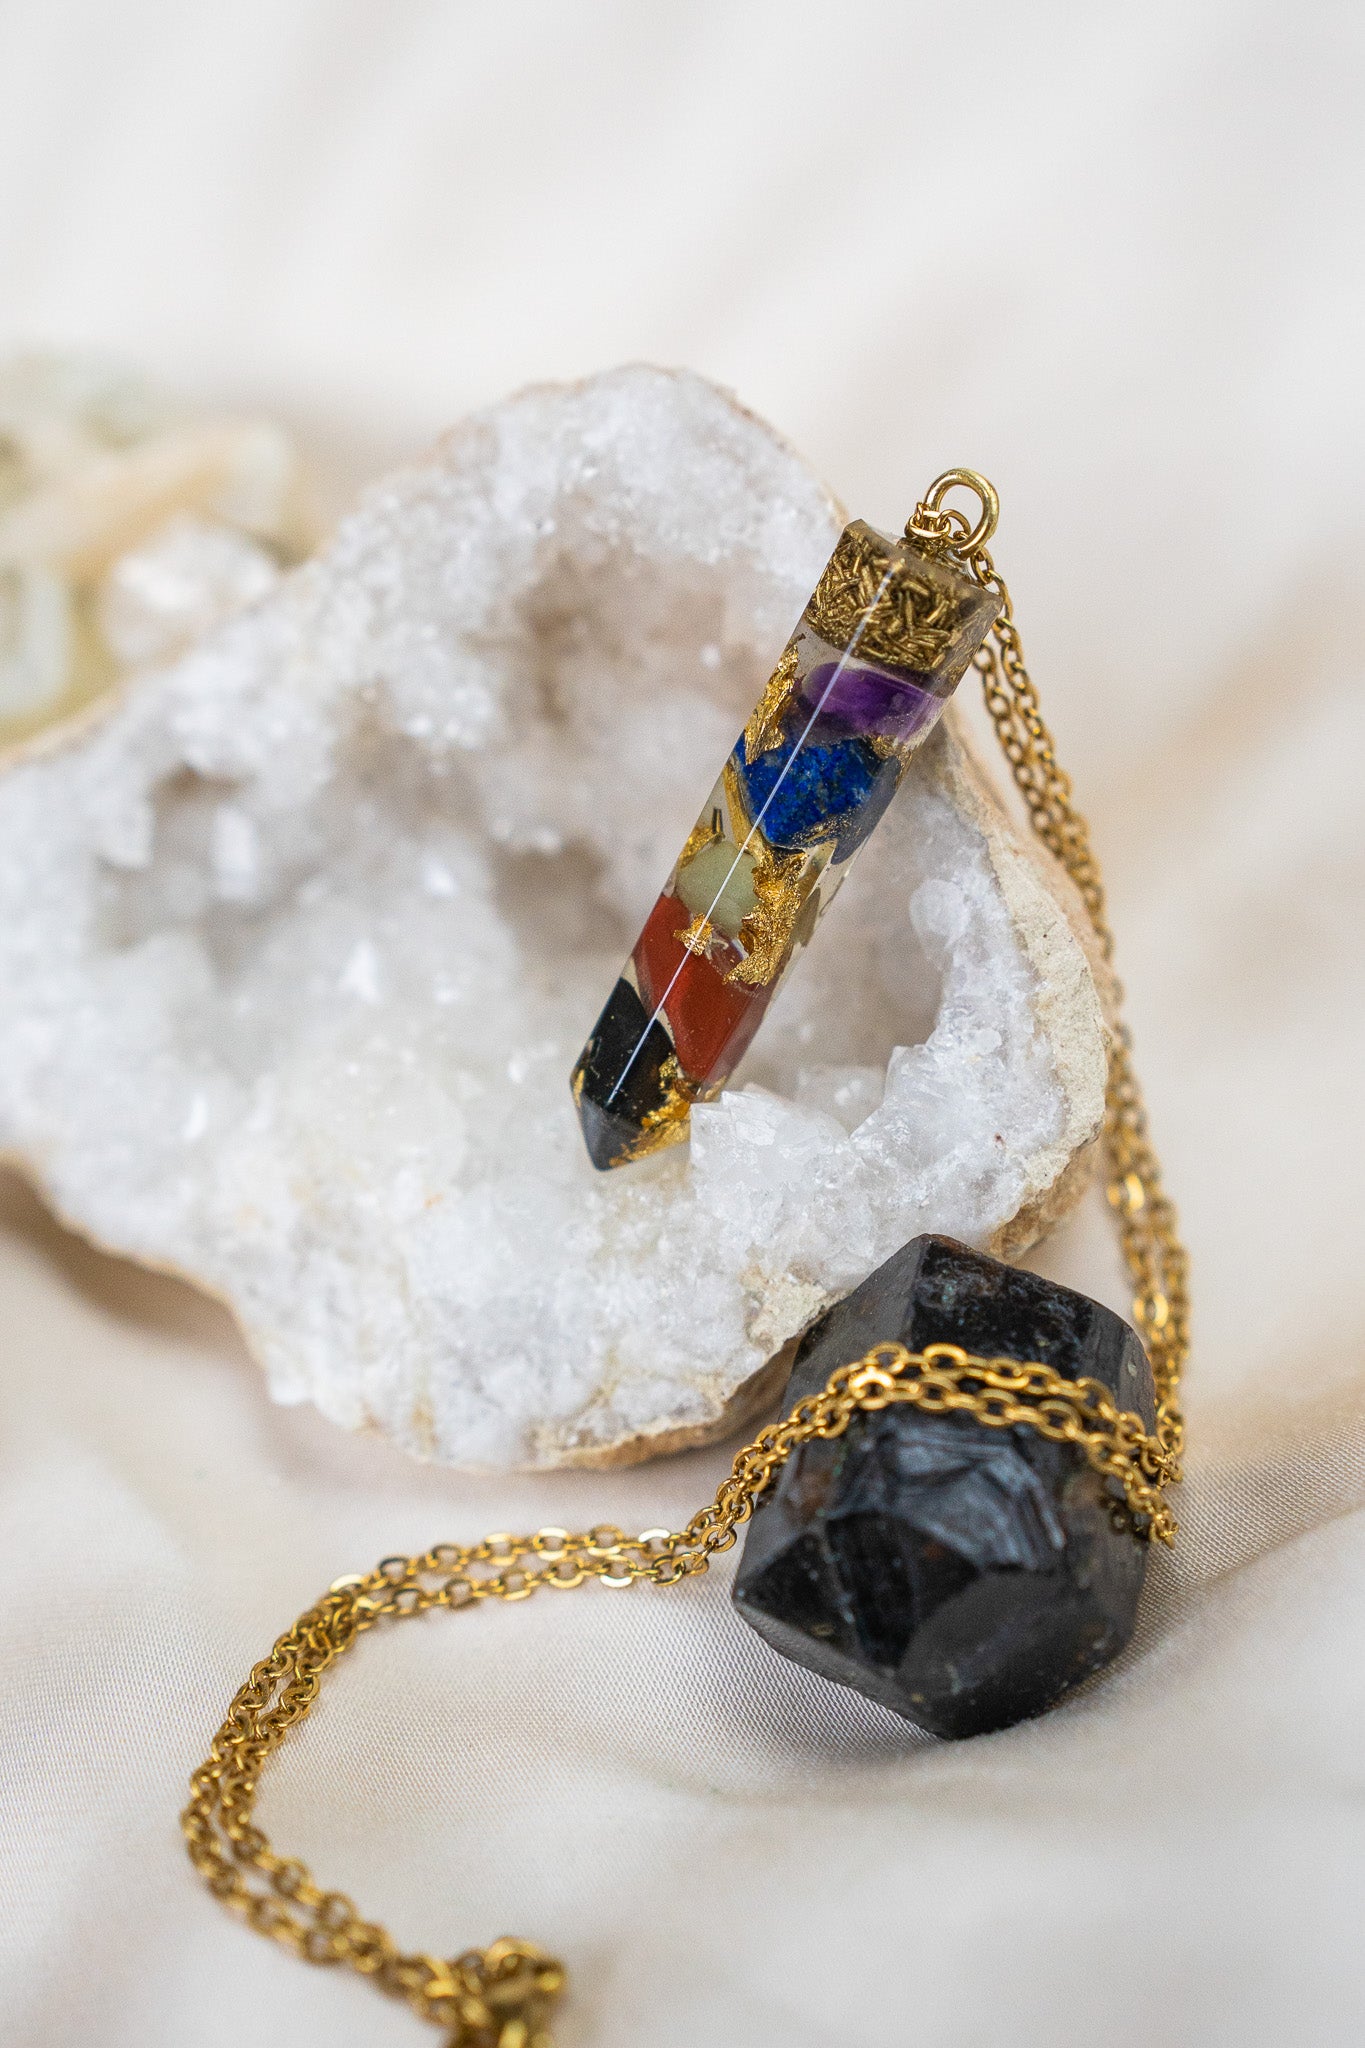 7-Chakra Rainbow Crystal Healing Pendant For Balance, Harmony